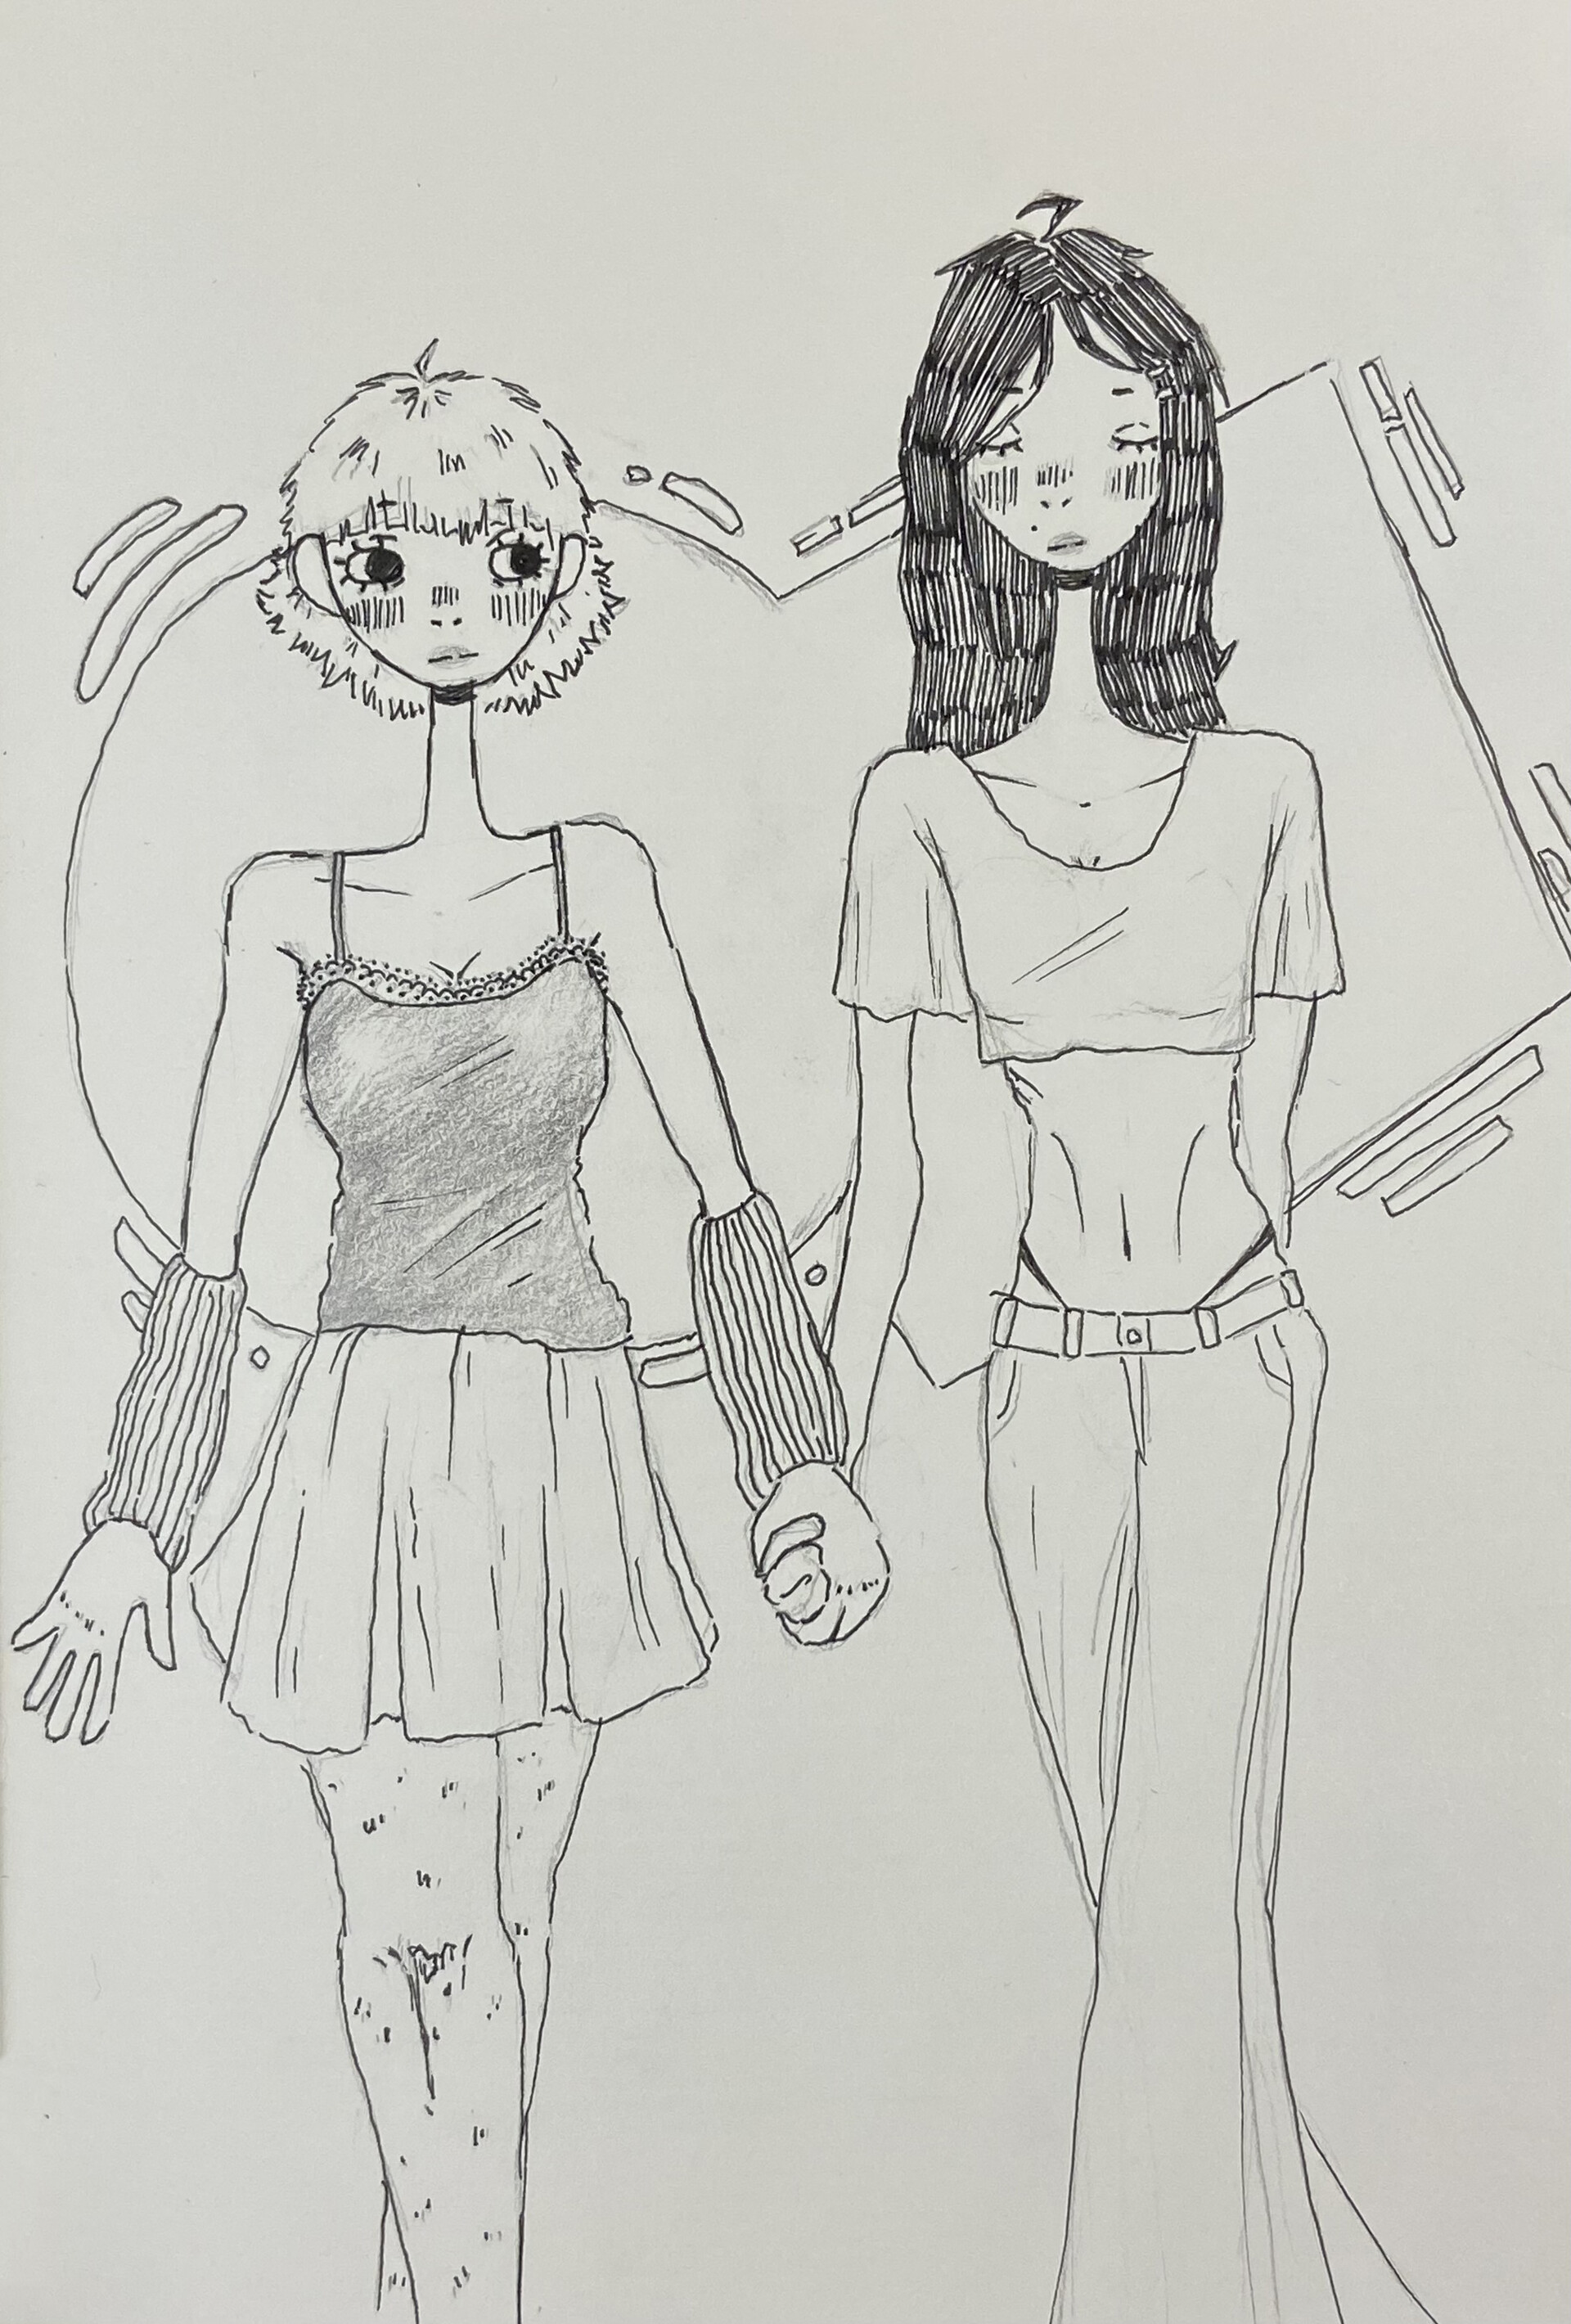 ArtStation - Two girls holding hands